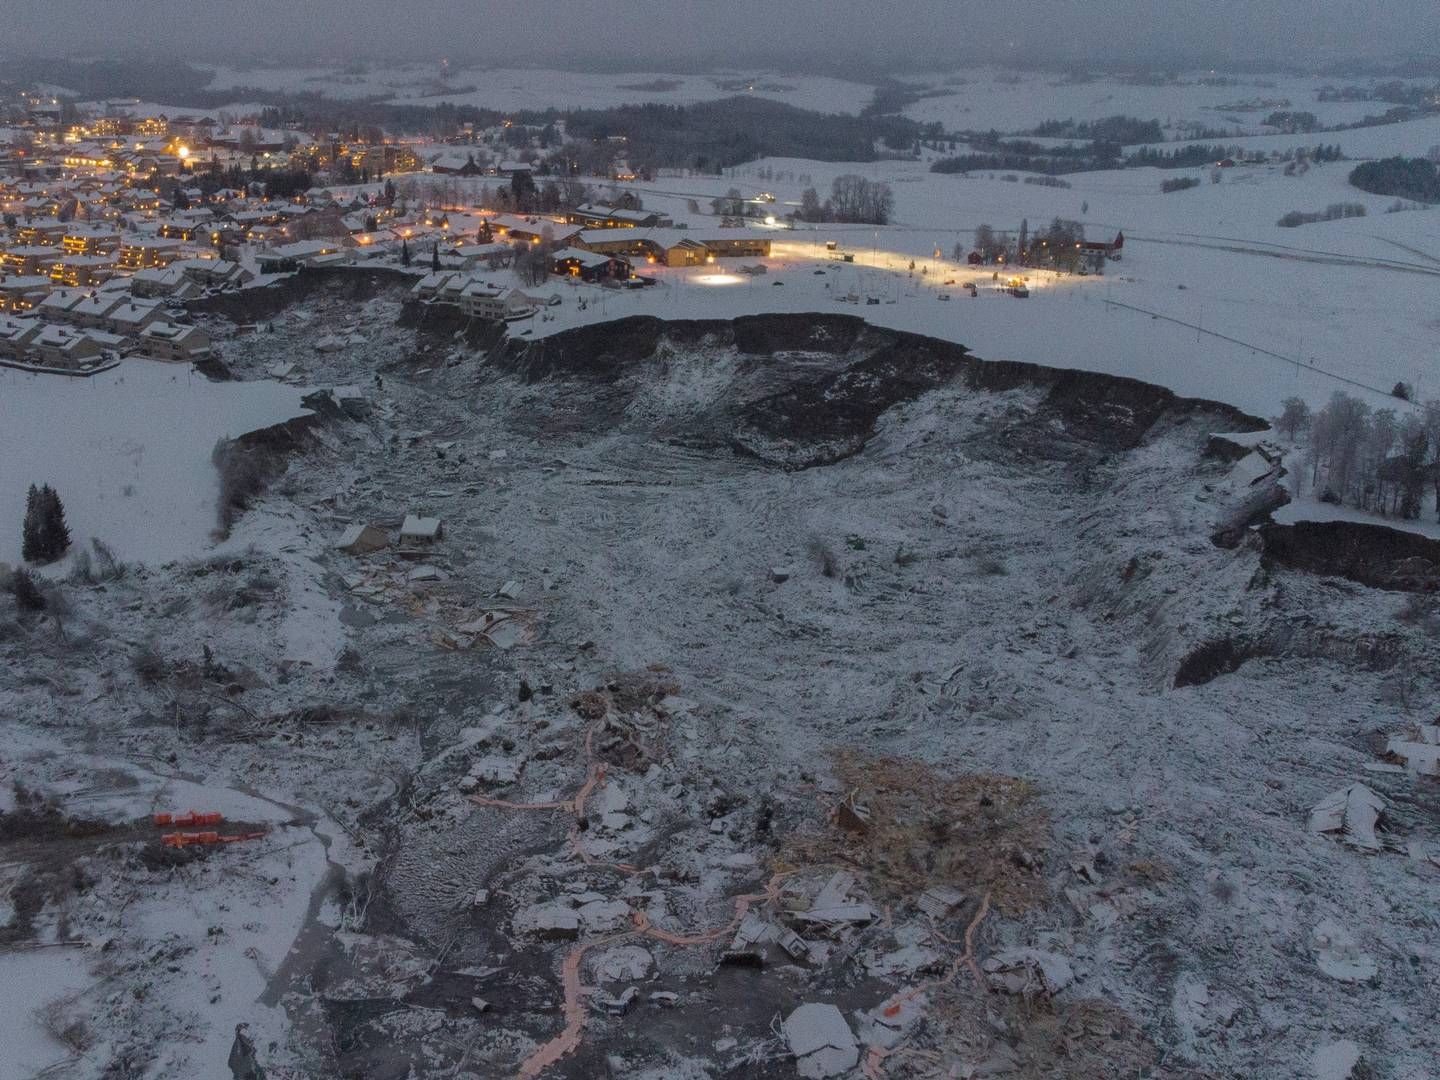 Skredet ødela flere boliger på Ask i Gjerdrum onsdag 30. desember. | Foto: Anders Martinsen, UAS Norway / Pool / NTB